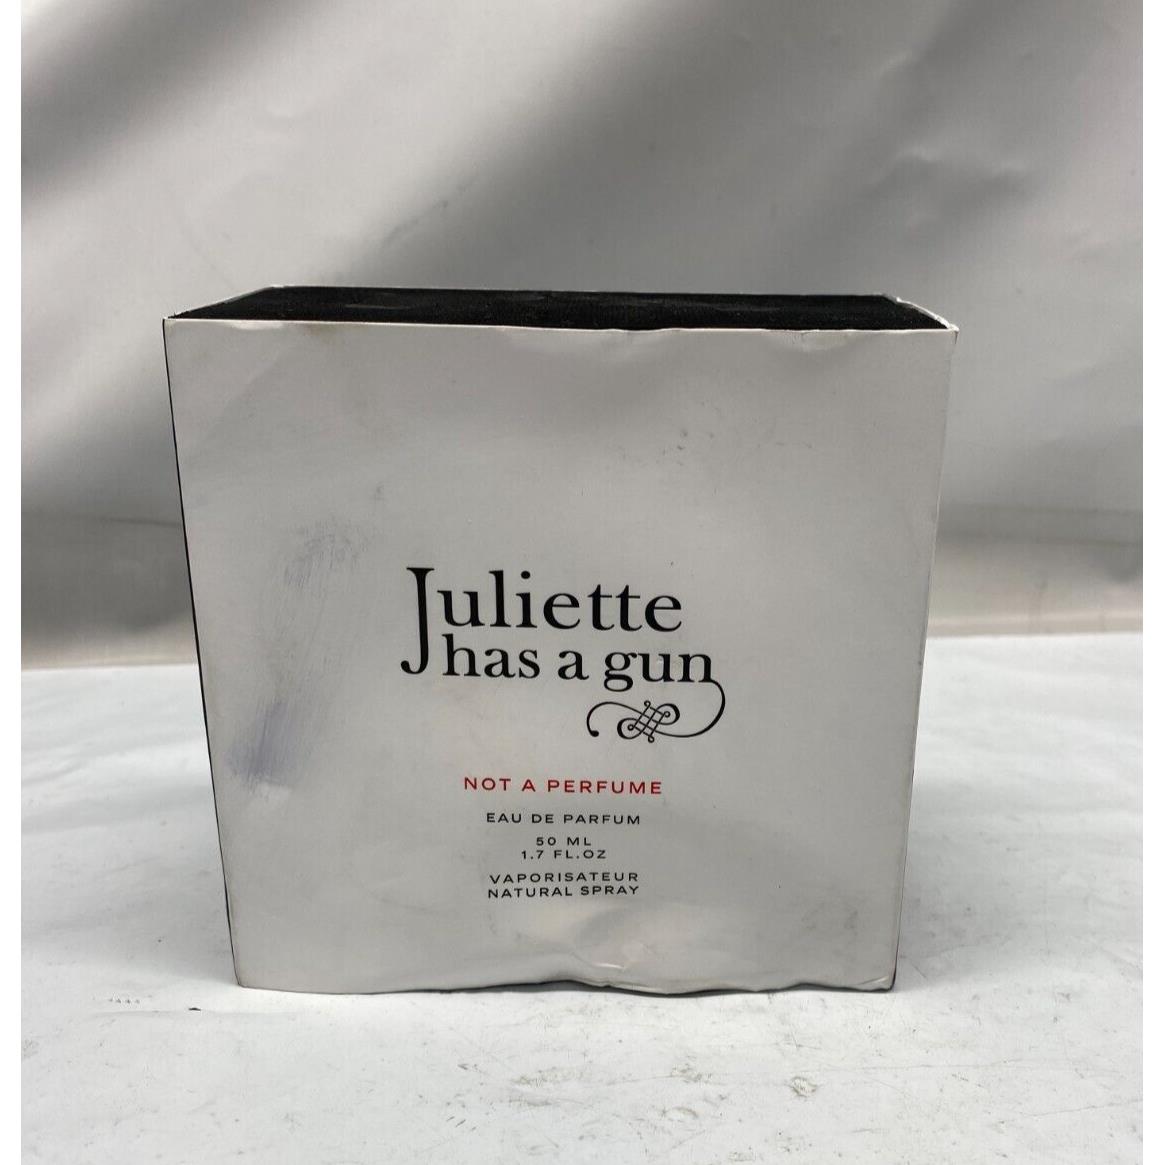 Juliette Has a Gun Not a Perfume - Eau de Parfum - 1.7 fl oz - Minor Box Damage